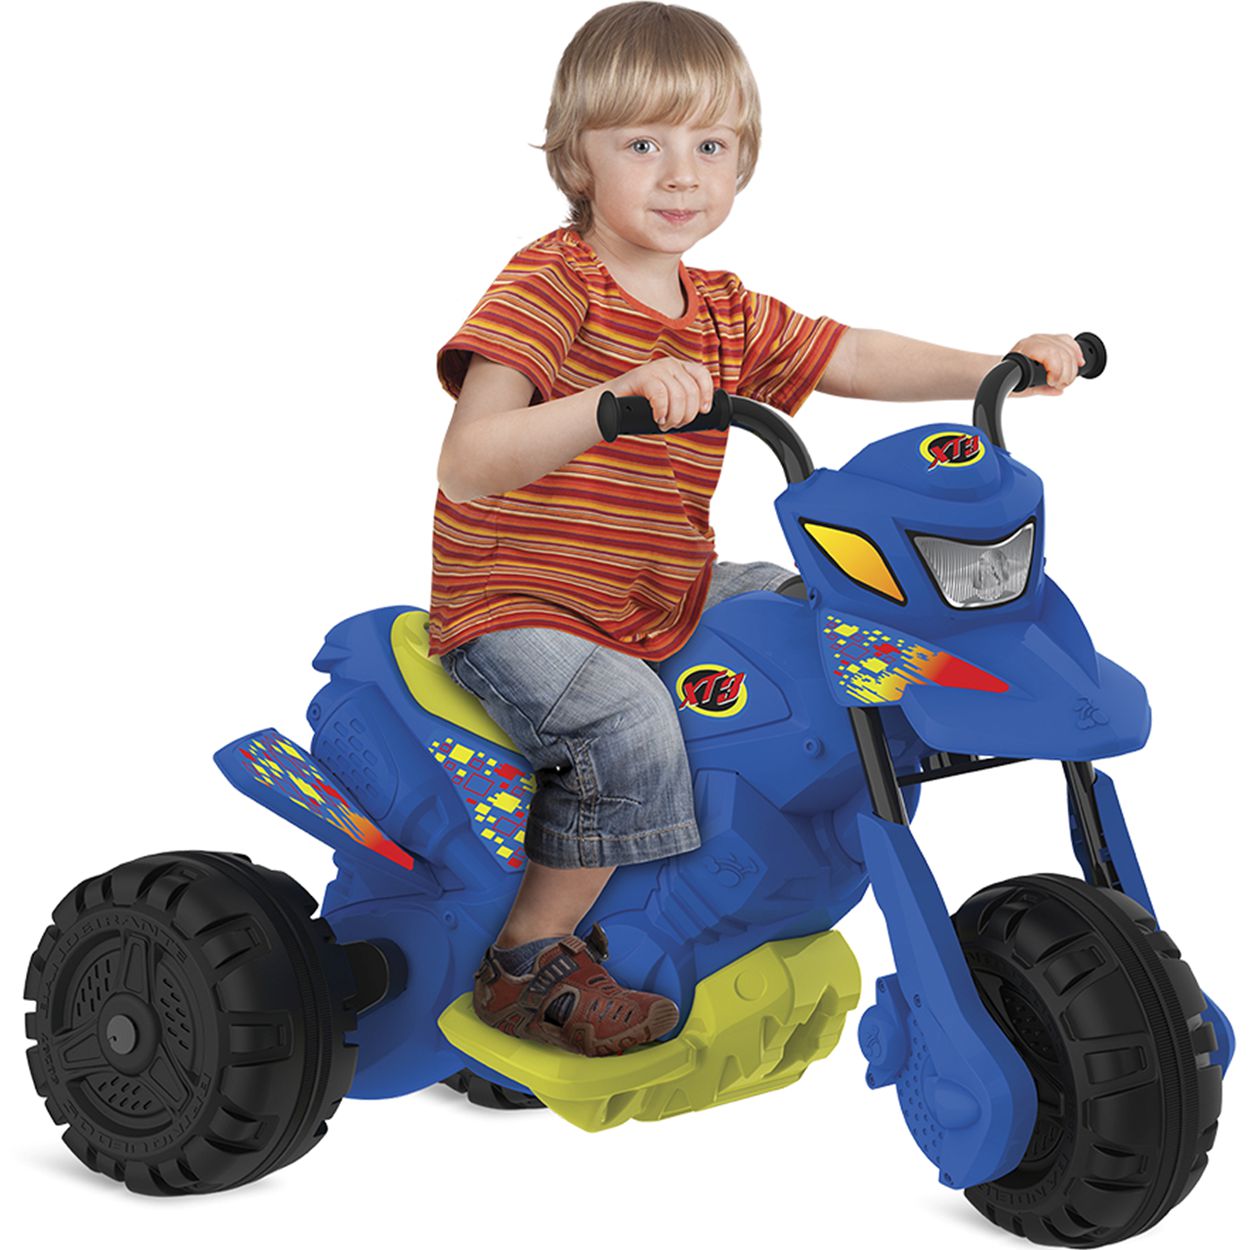 Mini moto de corrida brinquedo para crianças, homens puxar carro